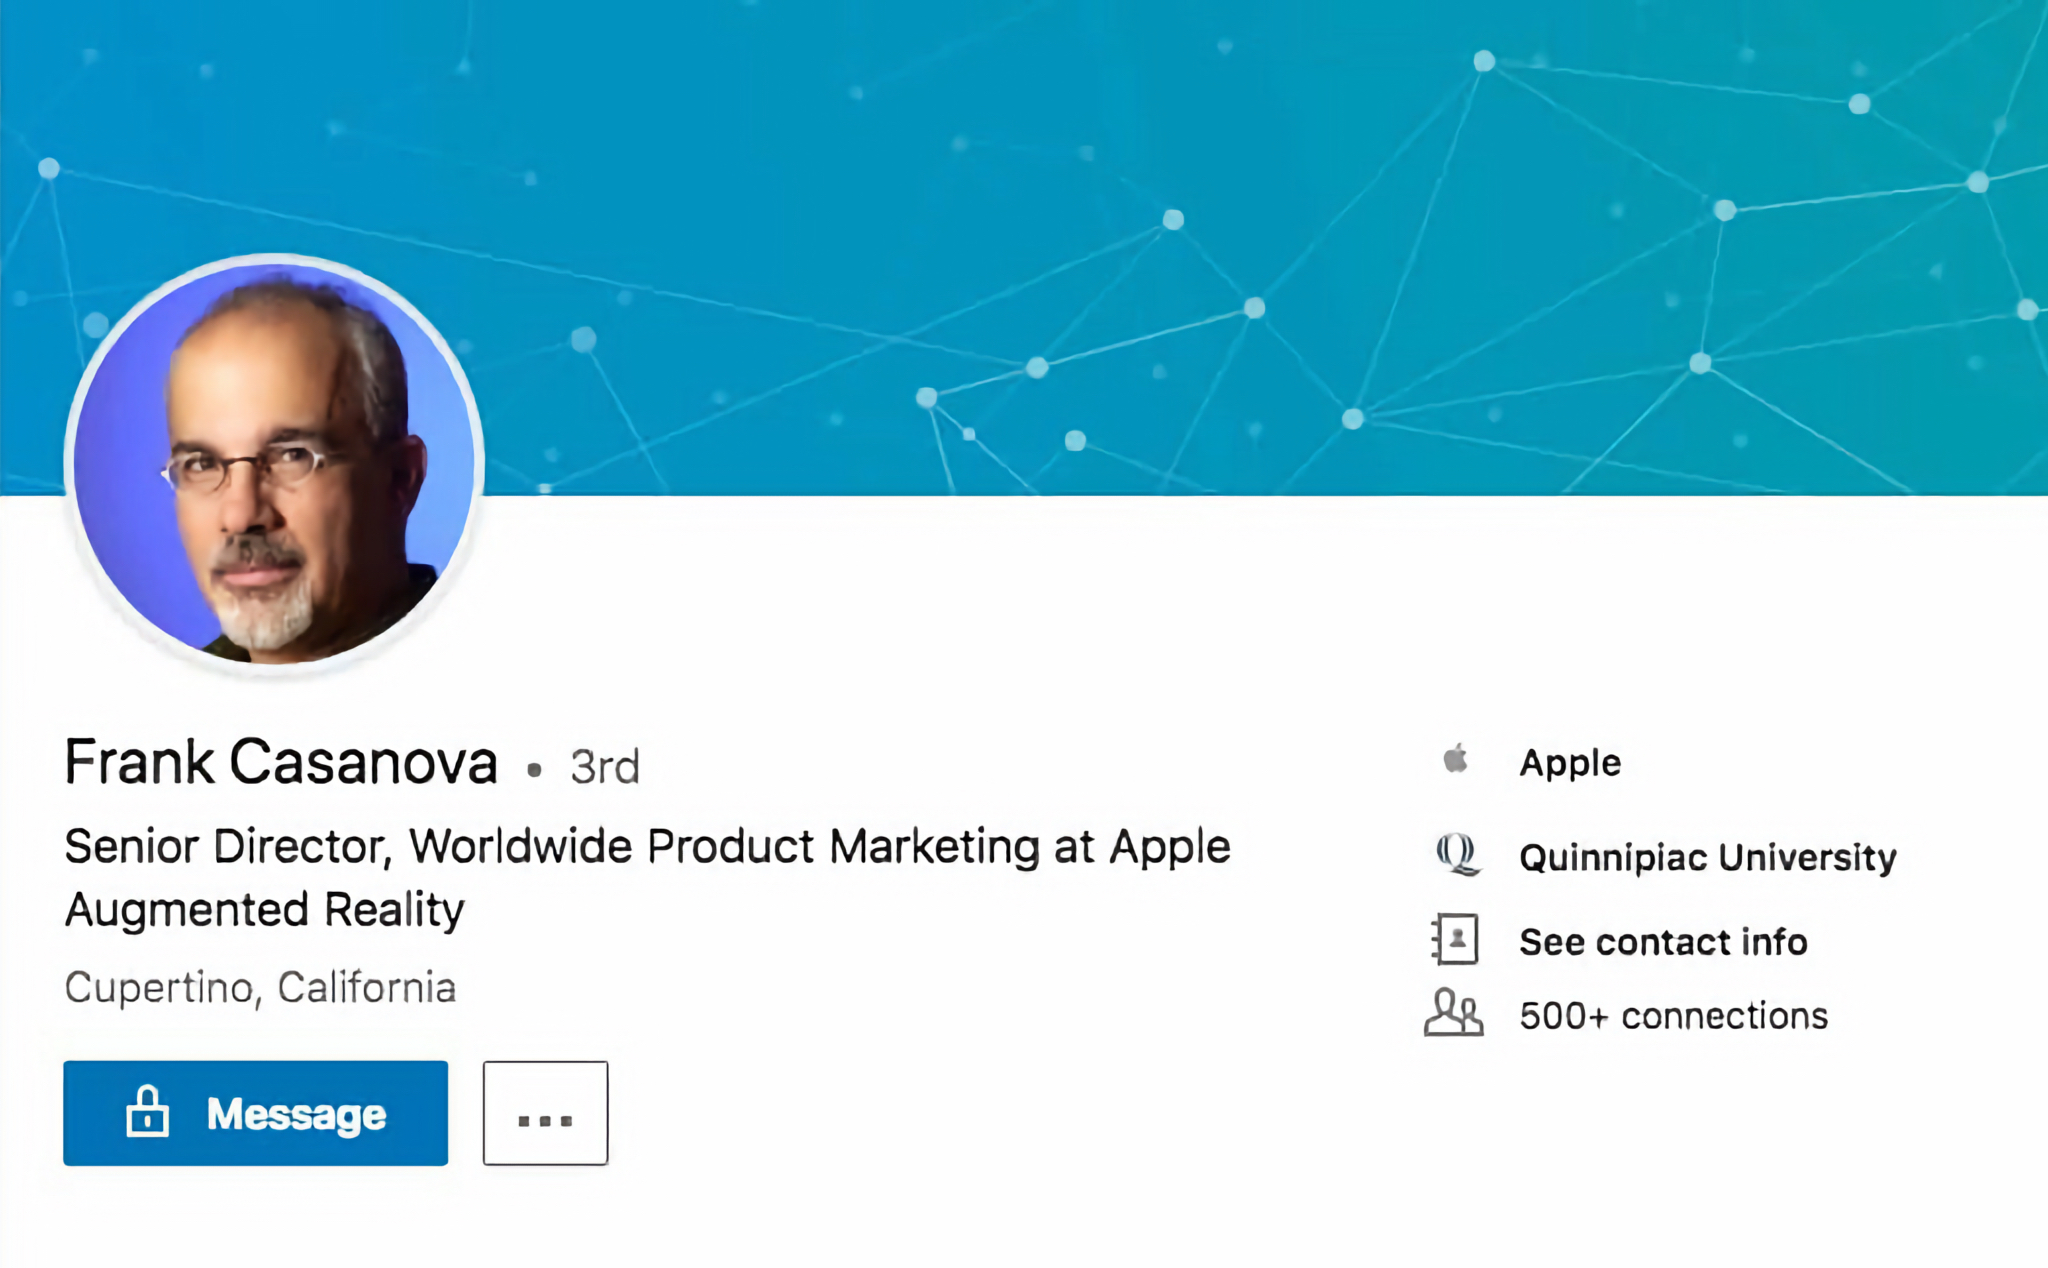 Giám đốc Marketing của Vision Pro nghỉ hưu sau 36 năm làm việc tại Apple